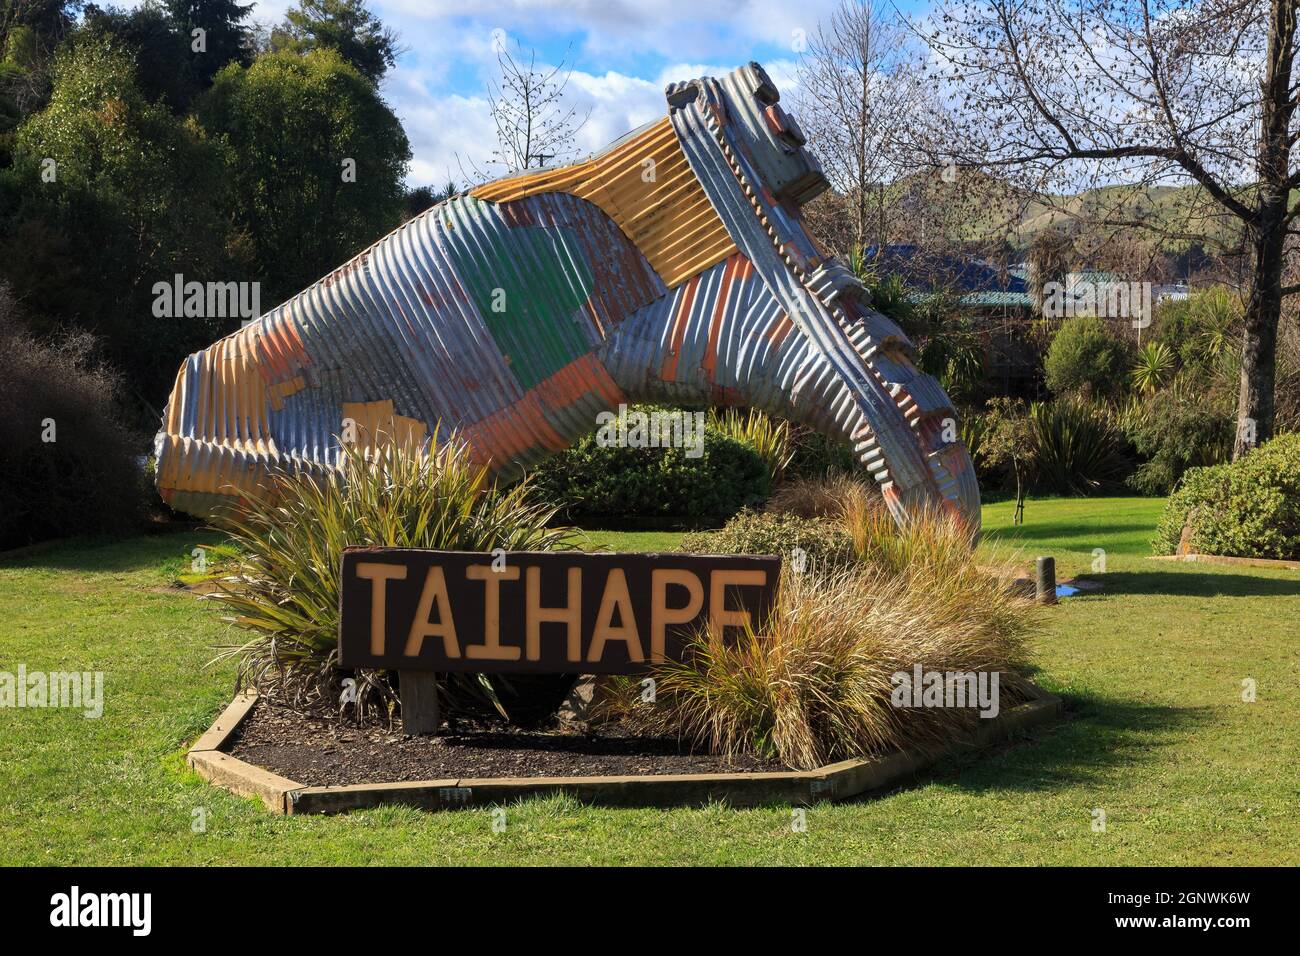 Una gigantesca scultura di gumboot in ferro ondulato fuori dalla città di Taihape, la "capitale di gumboot della Nuova Zelanda" Foto Stock